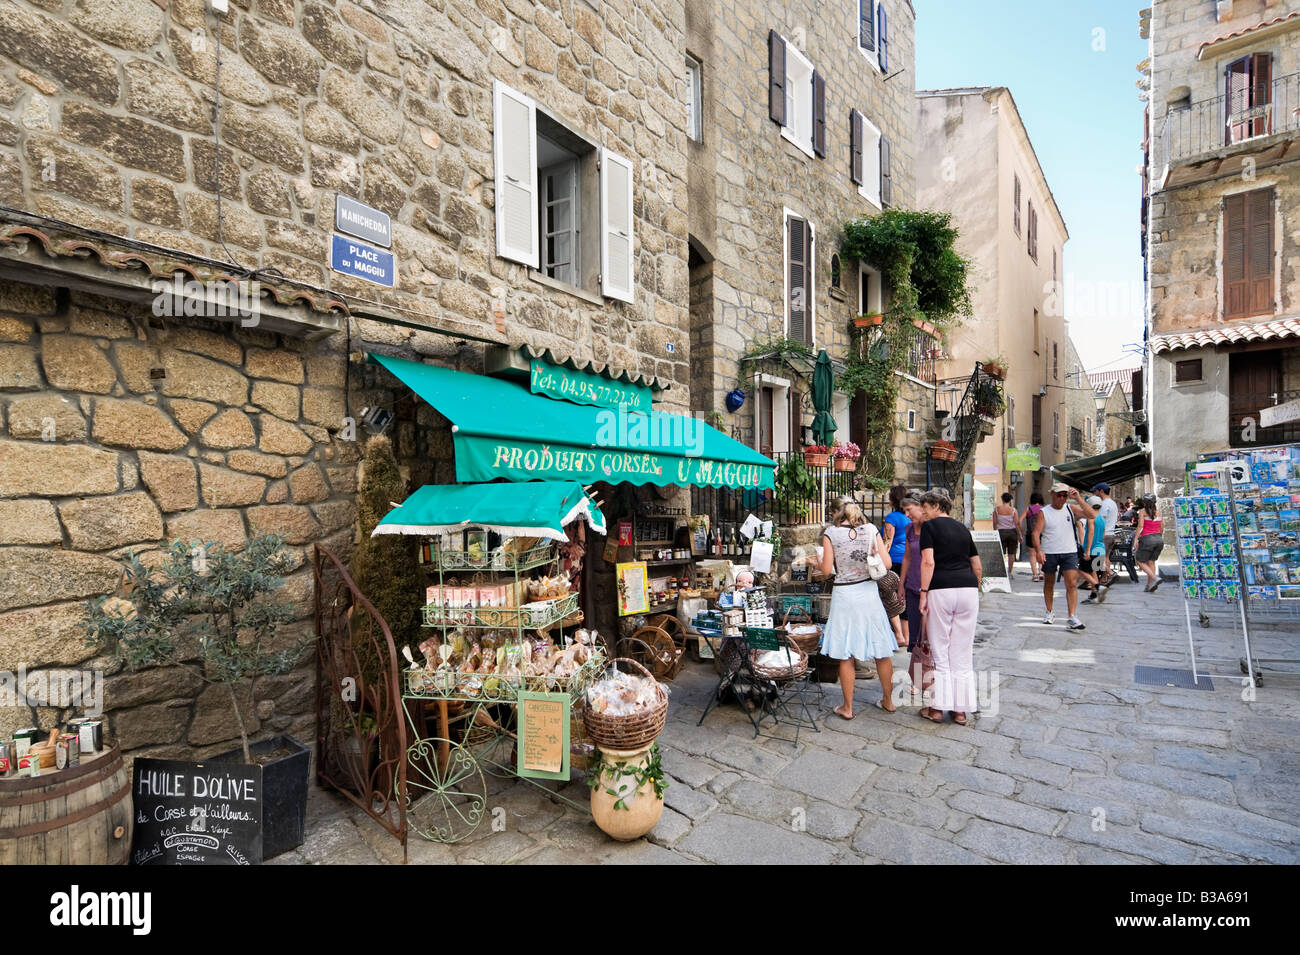 Laden mit traditionellen korsischen Produkten, Place du Maggiu, Vieille Ville (Altstadt), Sartene, Alta Rocca, Korsika, Frankreich Stockfoto